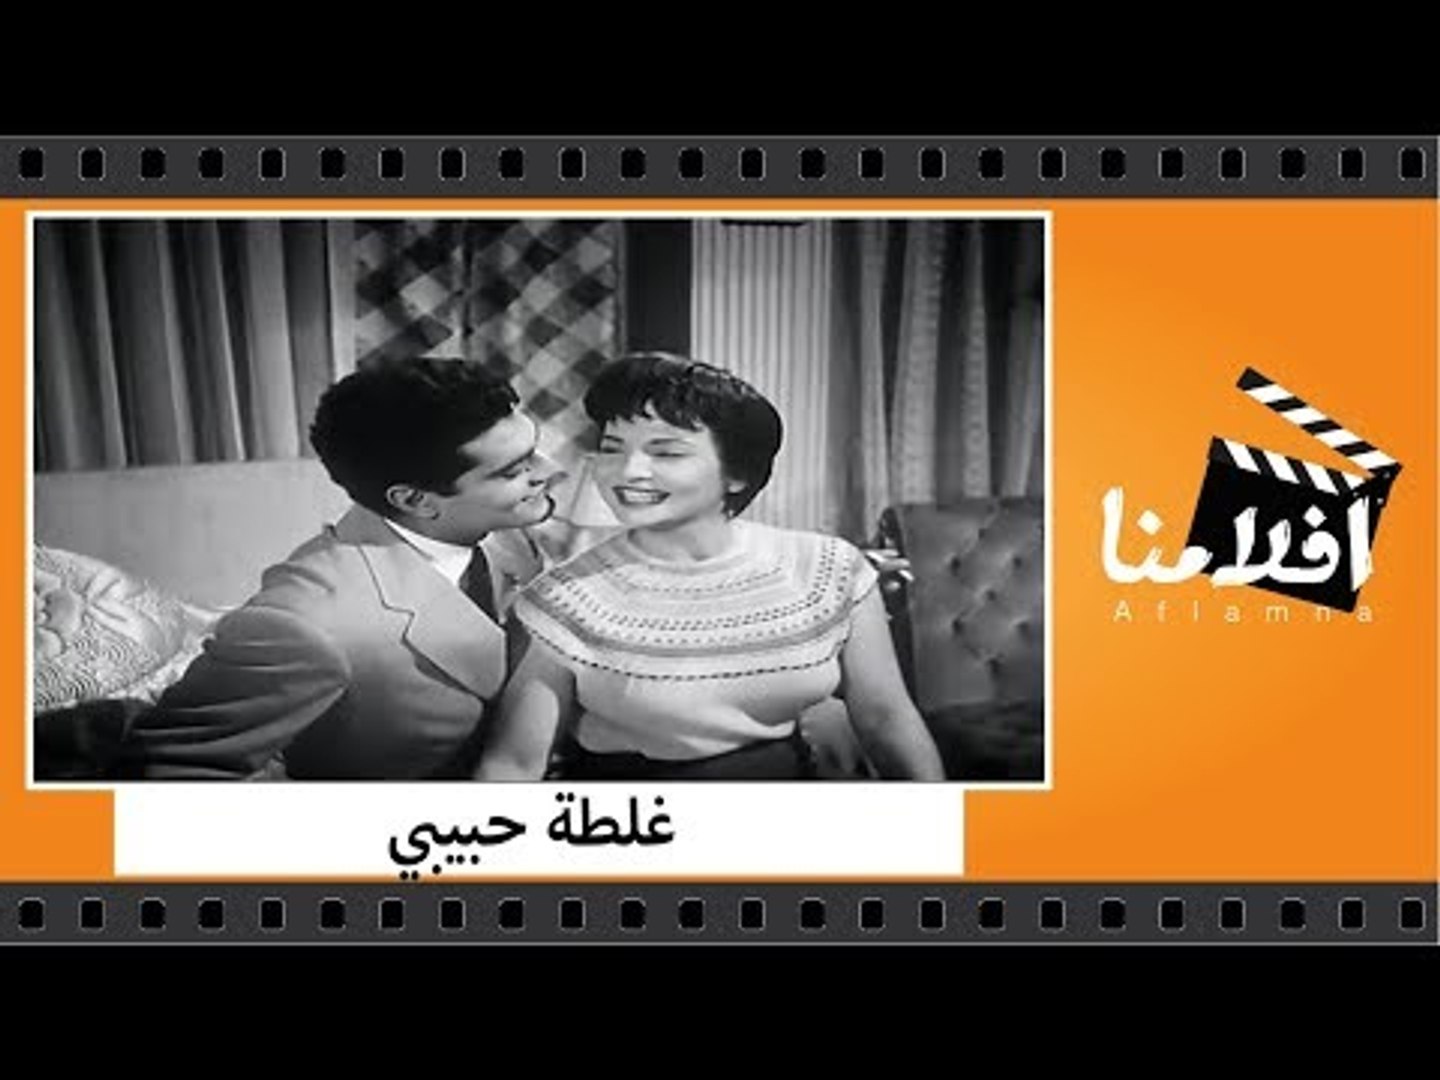 الفيلم العربي غلطة حبيبي بطولة شاديه وعمر الشريف وزوزو نبيل